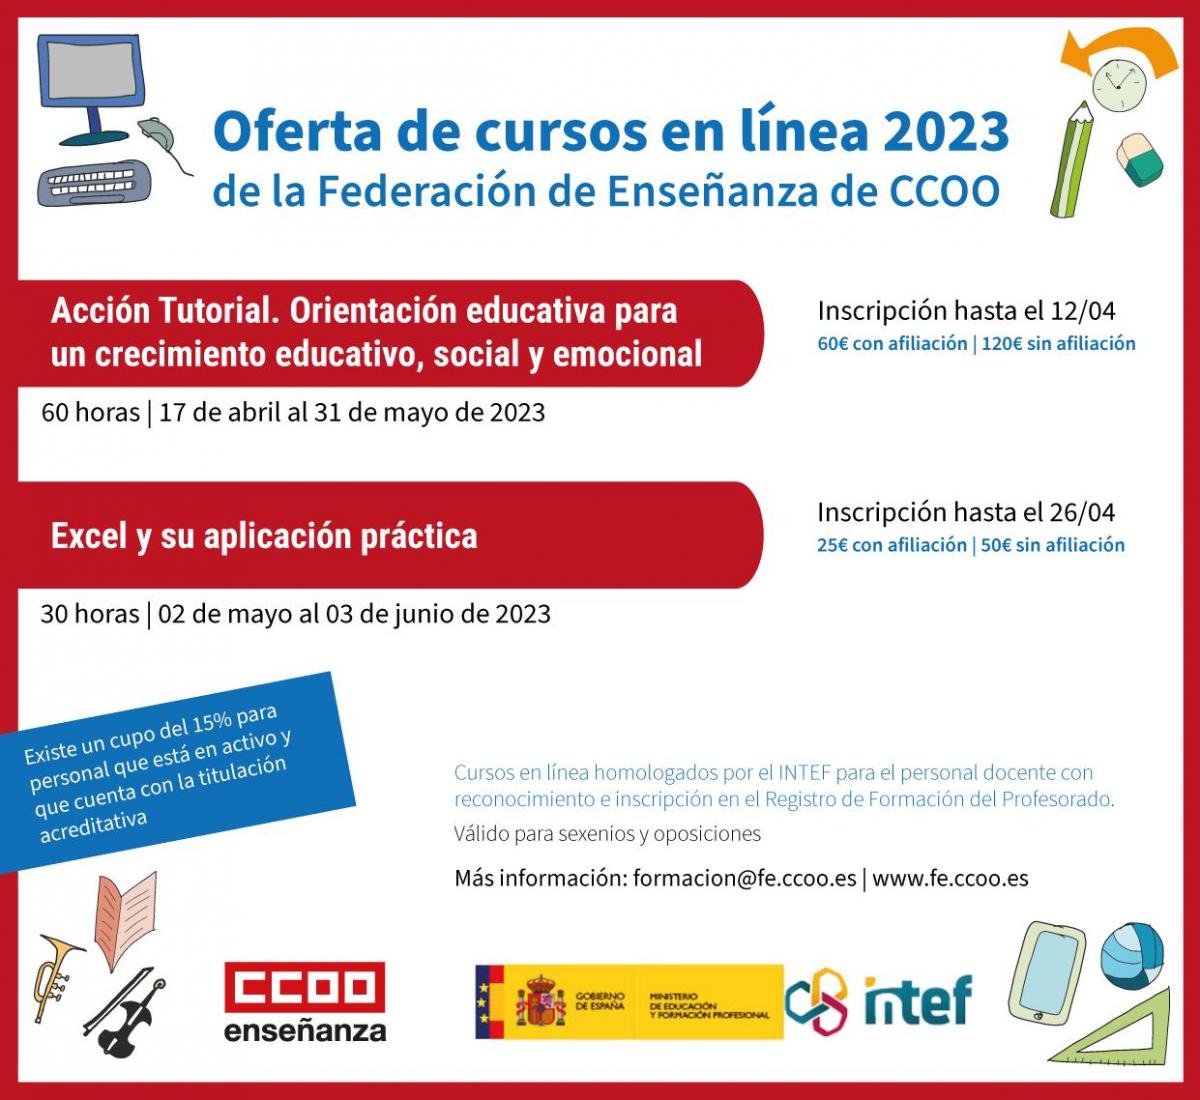 Oferta de cursos en línea 2023 de la Federación de Enseñanza de CCOO